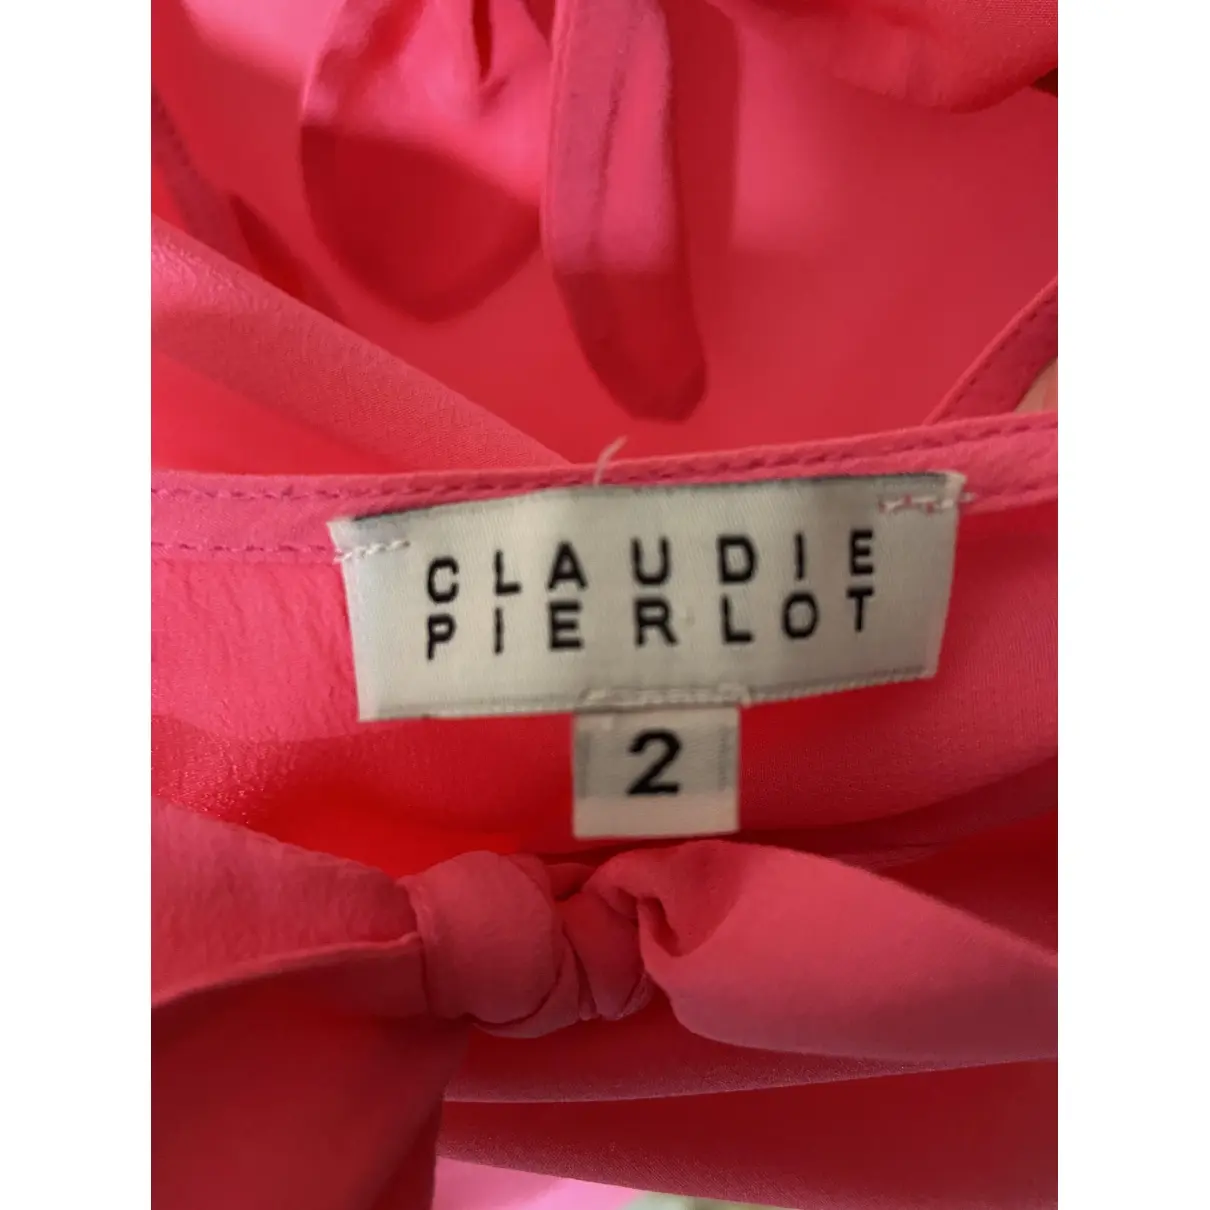 Buy Claudie Pierlot Silk top online